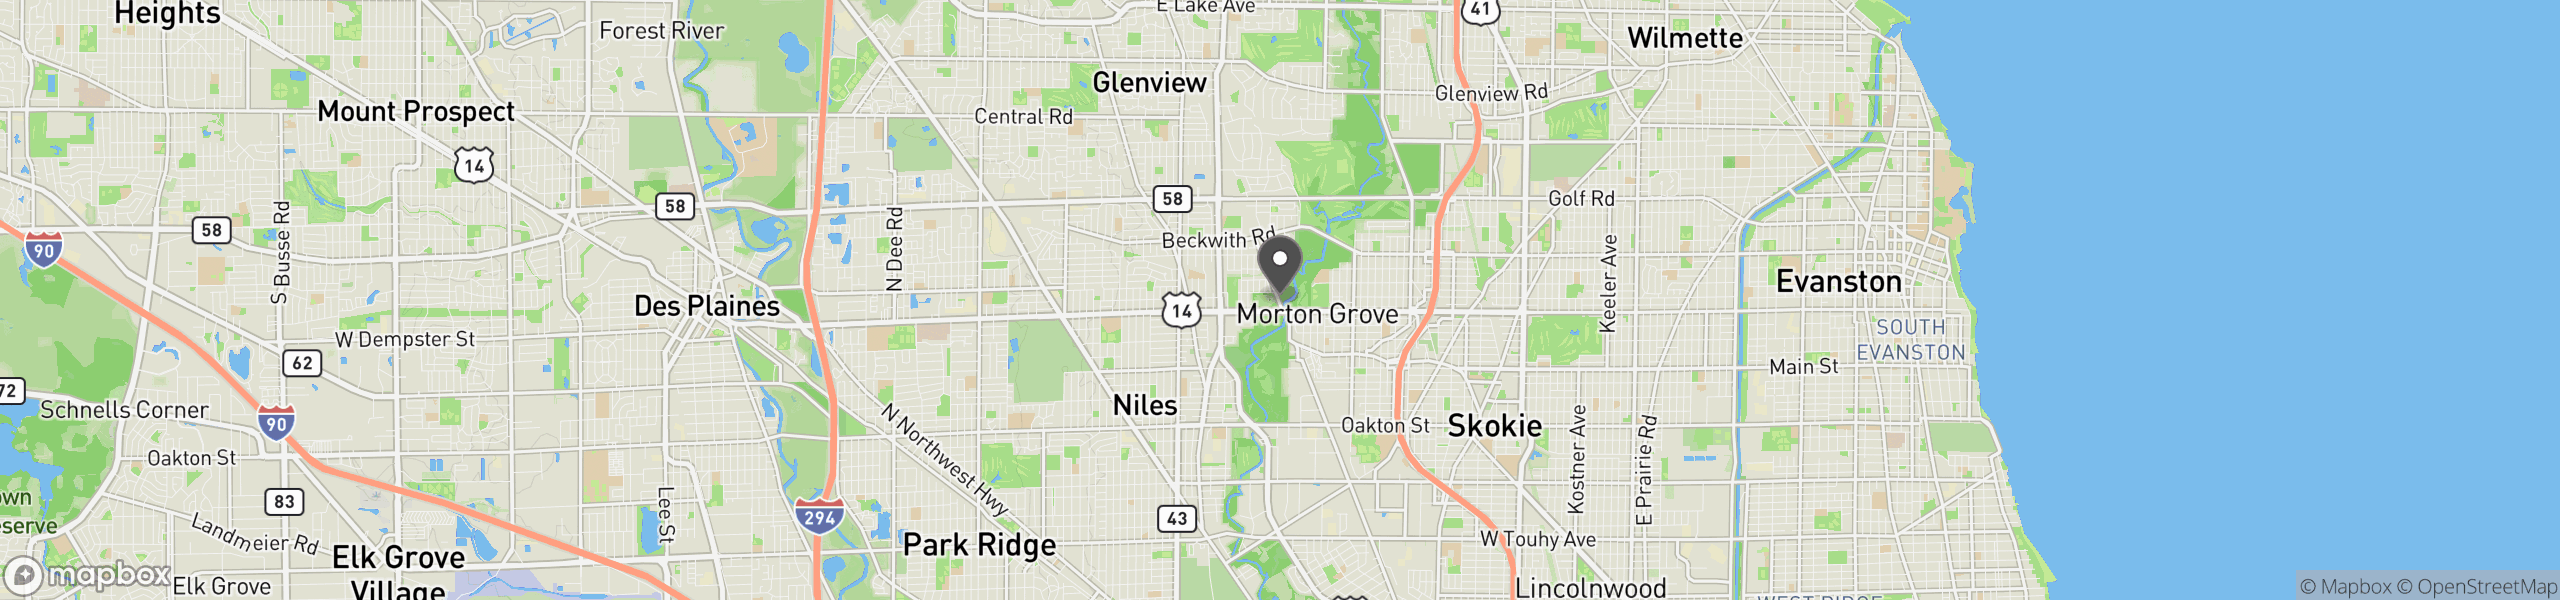 Morton Grove, IL 60053